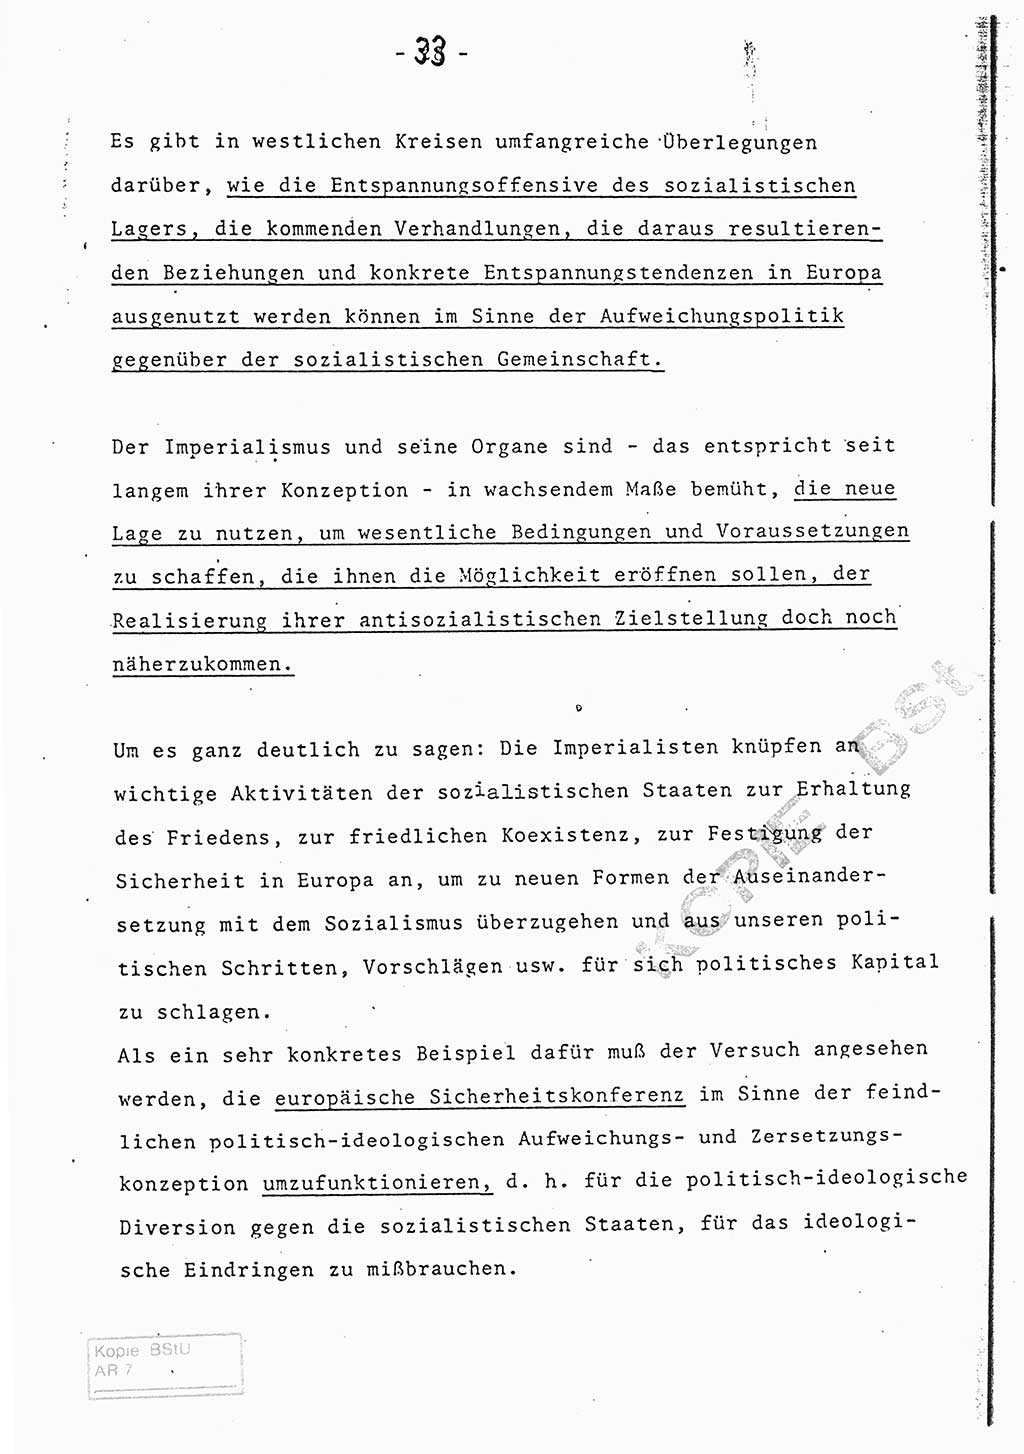 Referat (Entwurf) des Genossen Minister (Generaloberst Erich Mielke) auf der Dienstkonferenz 1972, Ministerium für Staatssicherheit (MfS) [Deutsche Demokratische Republik (DDR)], Der Minister, Geheime Verschlußsache (GVS) 008-150/72, Berlin 25.2.1972, Seite 33 (Ref. Entw. DK MfS DDR Min. GVS 008-150/72 1972, S. 33)